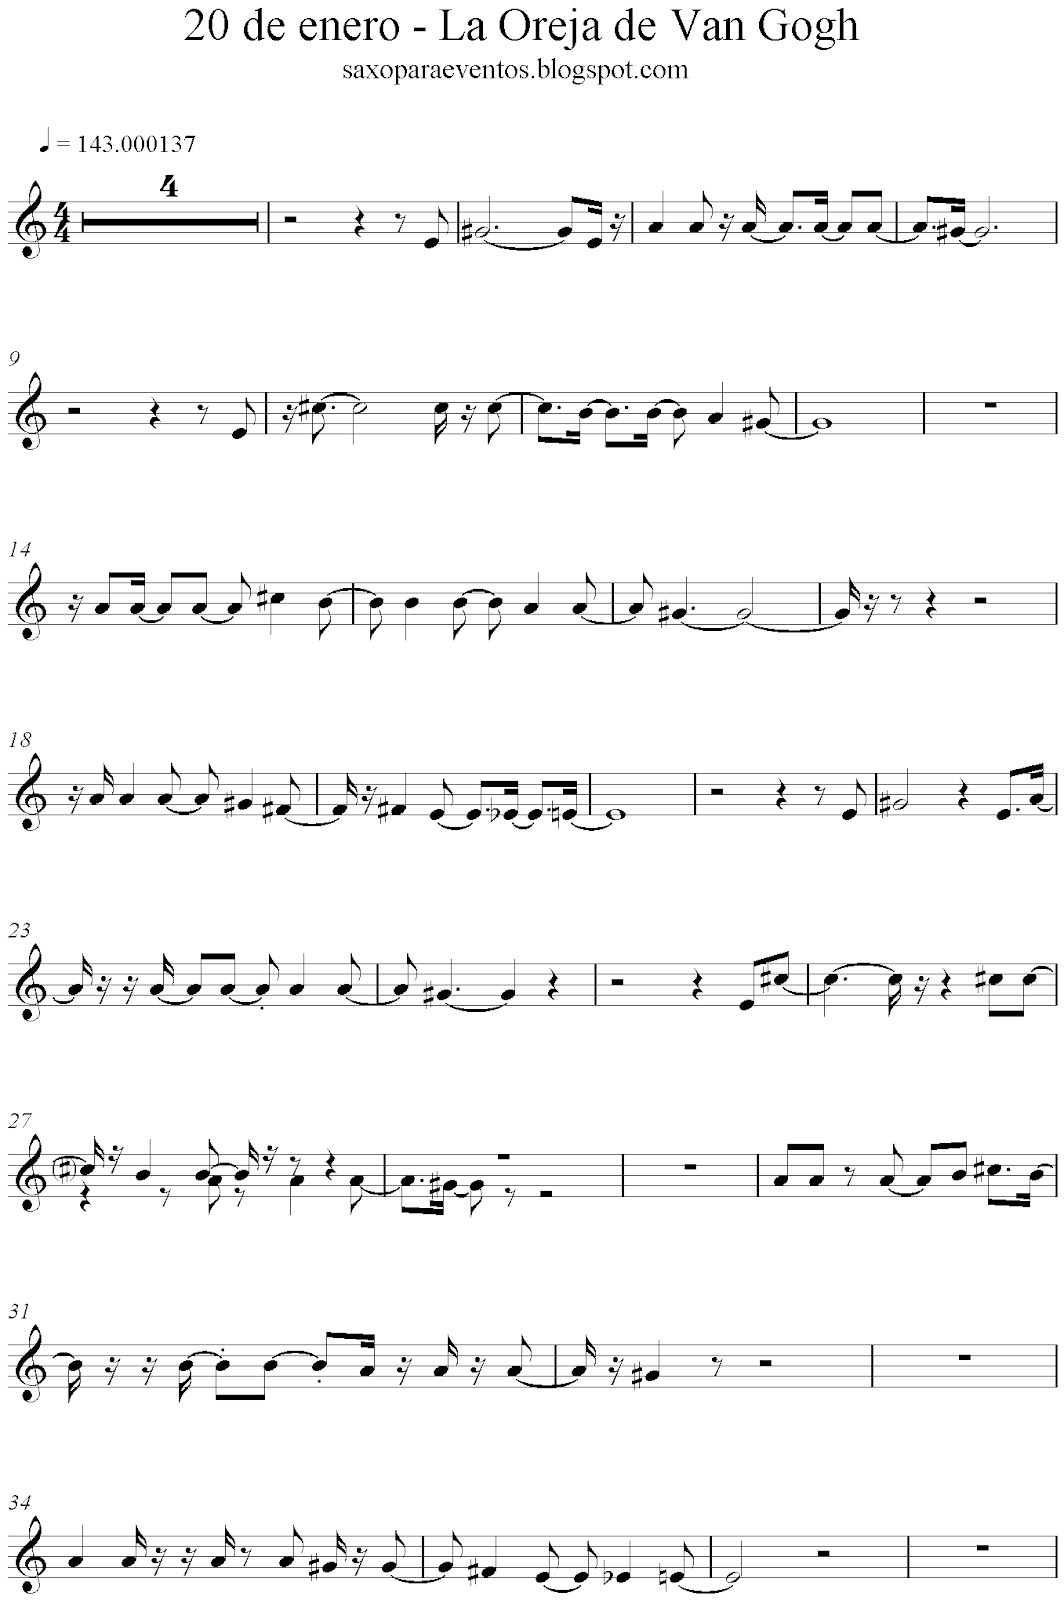 Partituras De 20 De Enero De La Oreja De Van Gogh Partituras Y Pistas Para Saxo Sheet Music And Play Along For Sax